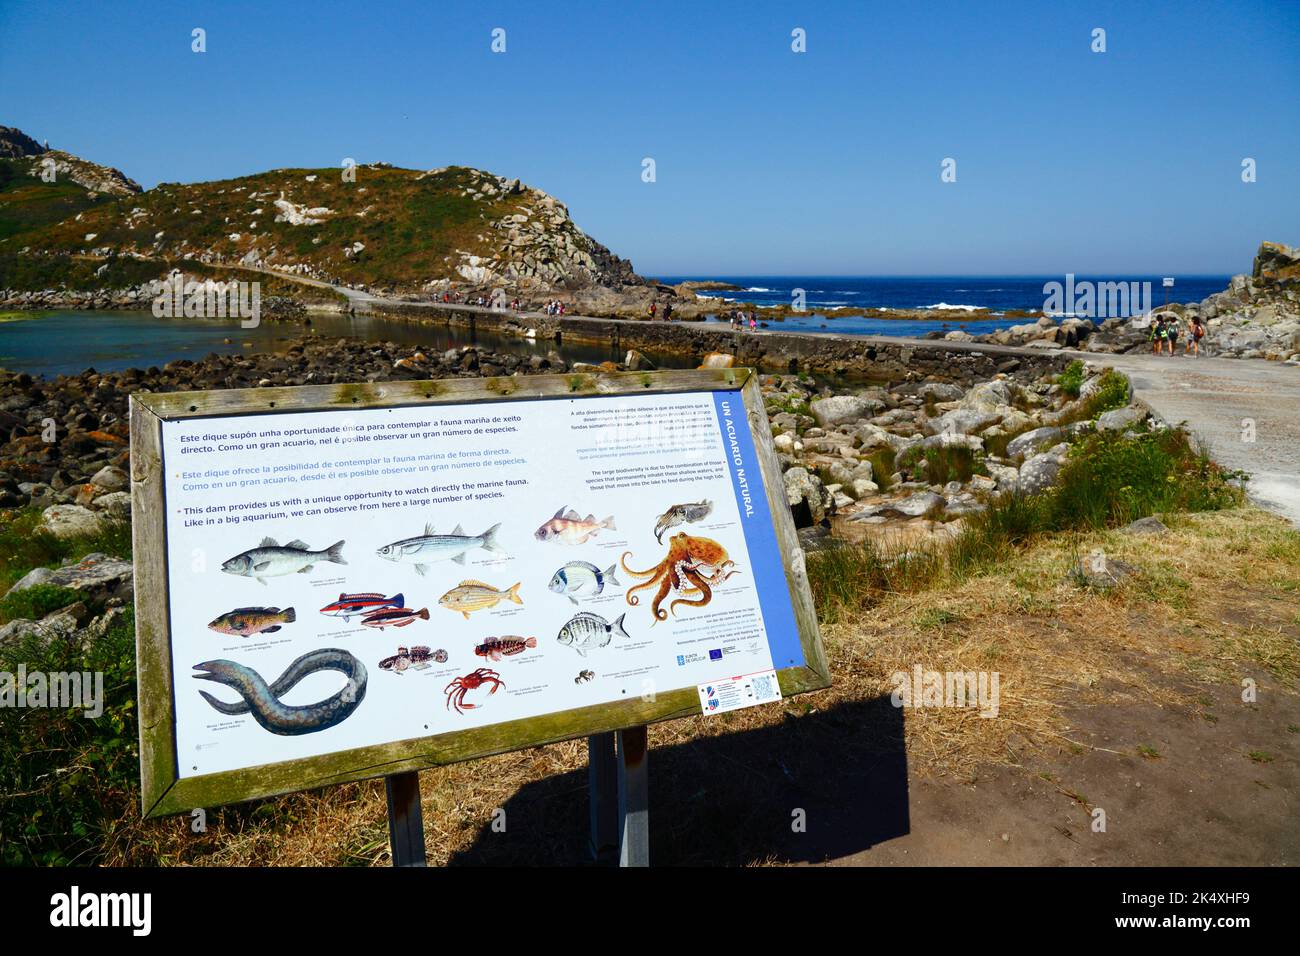 Informationstafel mit Bildern der Arten der marinen Tierwelt, die in den Lagunen in der Nähe des Cies Islands, Galicien, Spanien zu sehen sind. Stockfoto